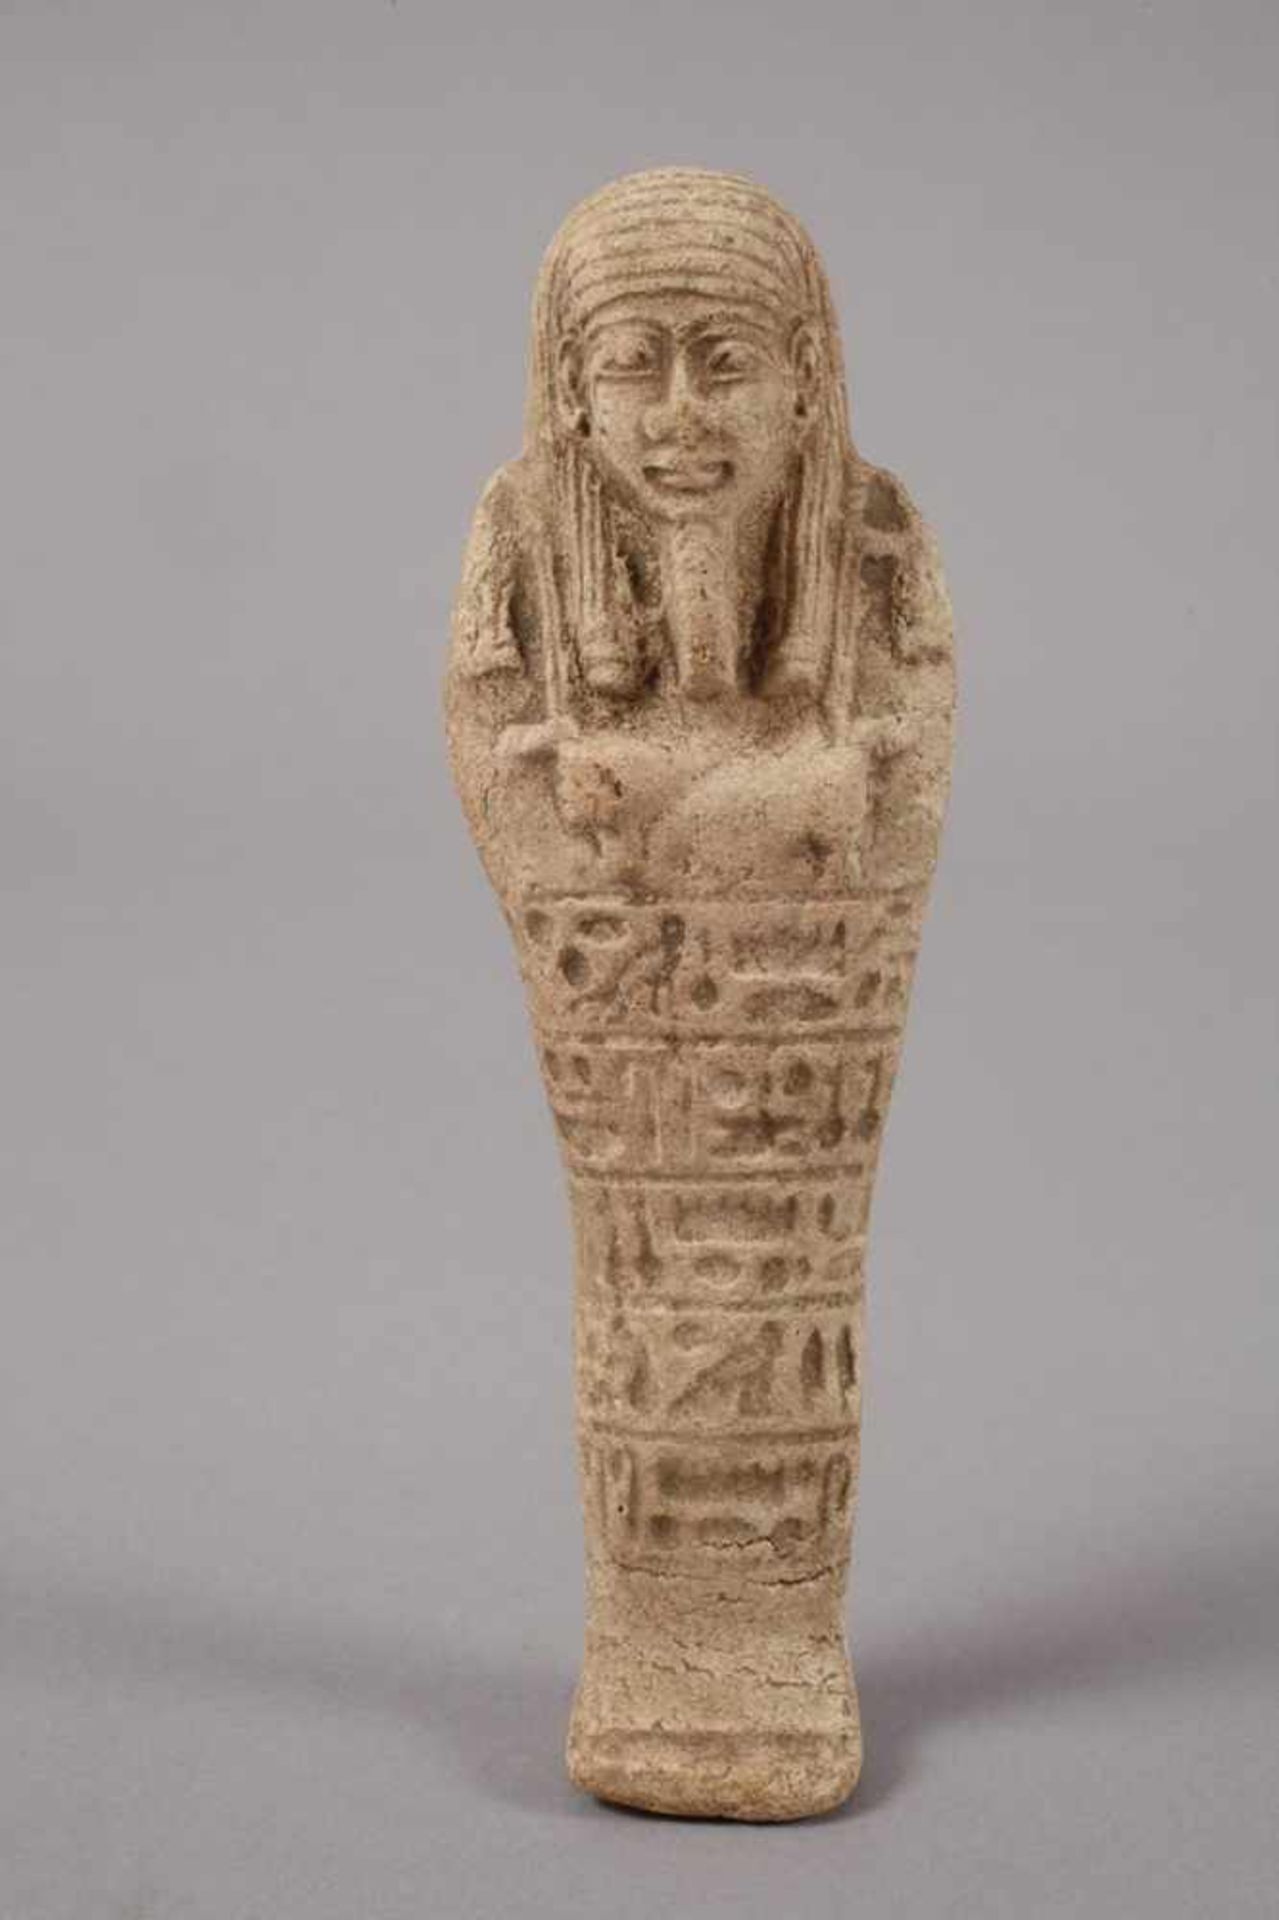 UschebtiAlter unbestimmt, altägyptische Form, Kieselkeramik, vollständig, L ges. ca. 14 cm.- - -23. - Bild 2 aus 3